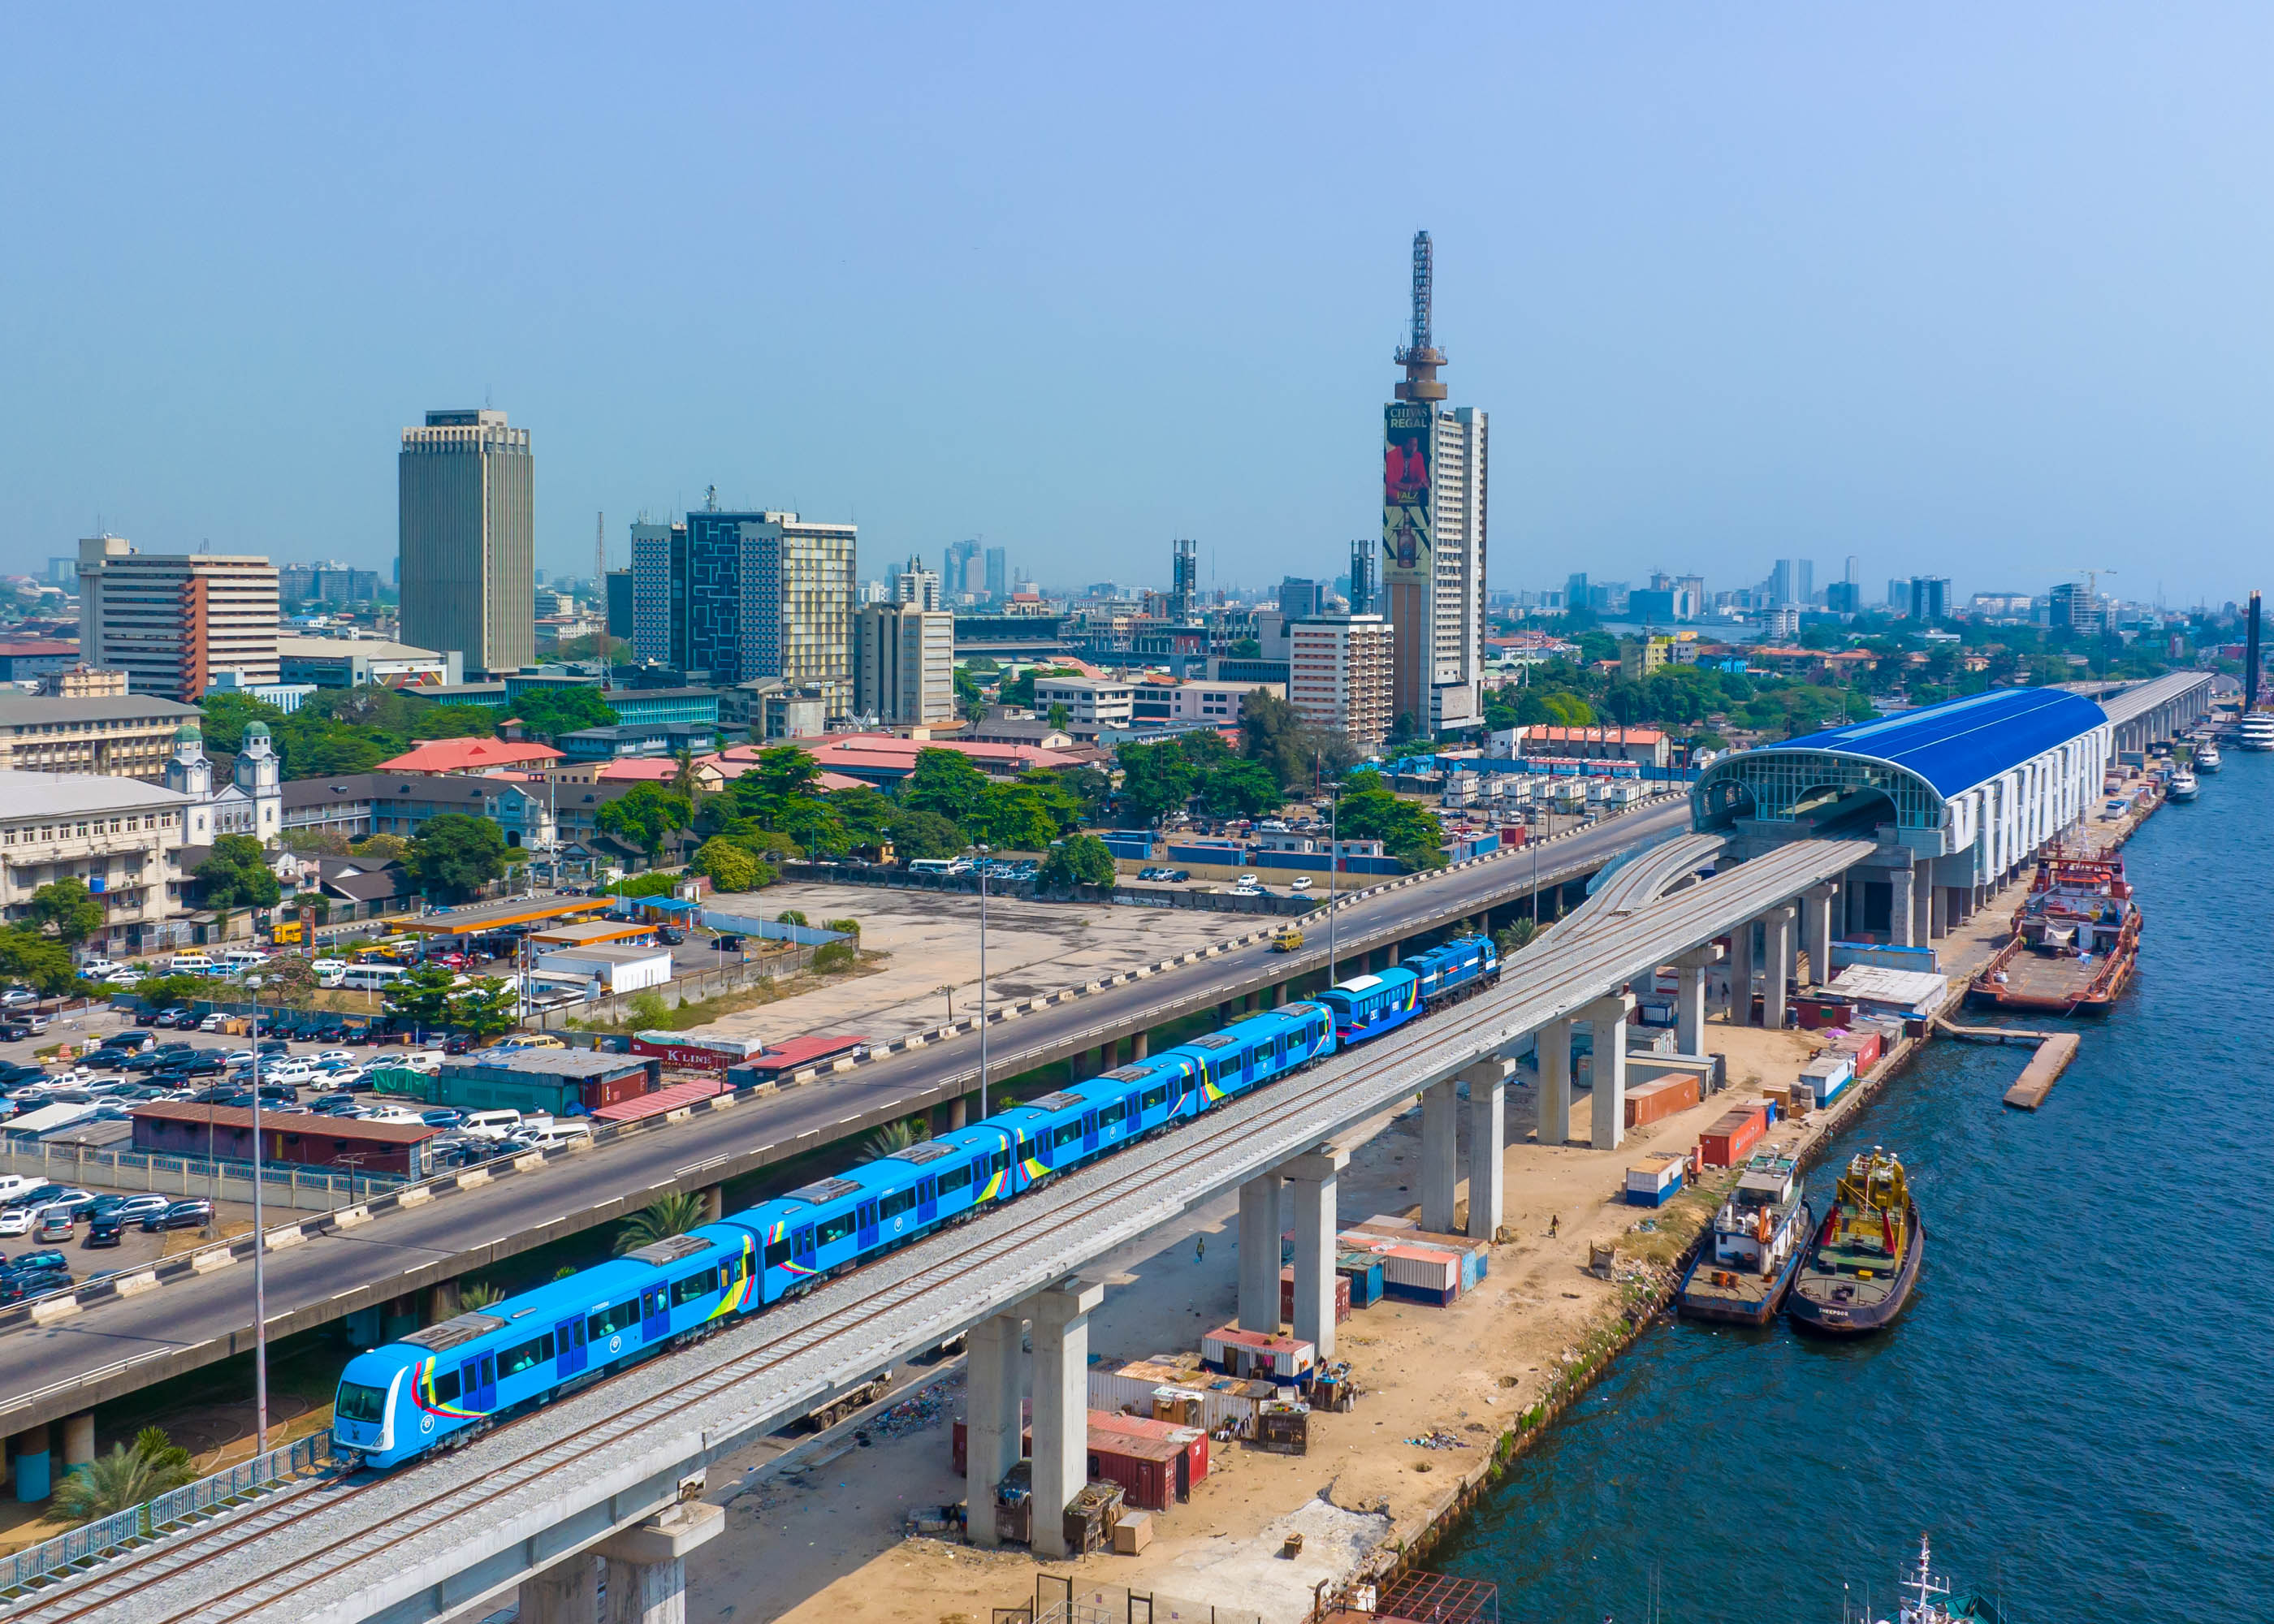 西非首条电气化轻轨正式通车 中国土木承建